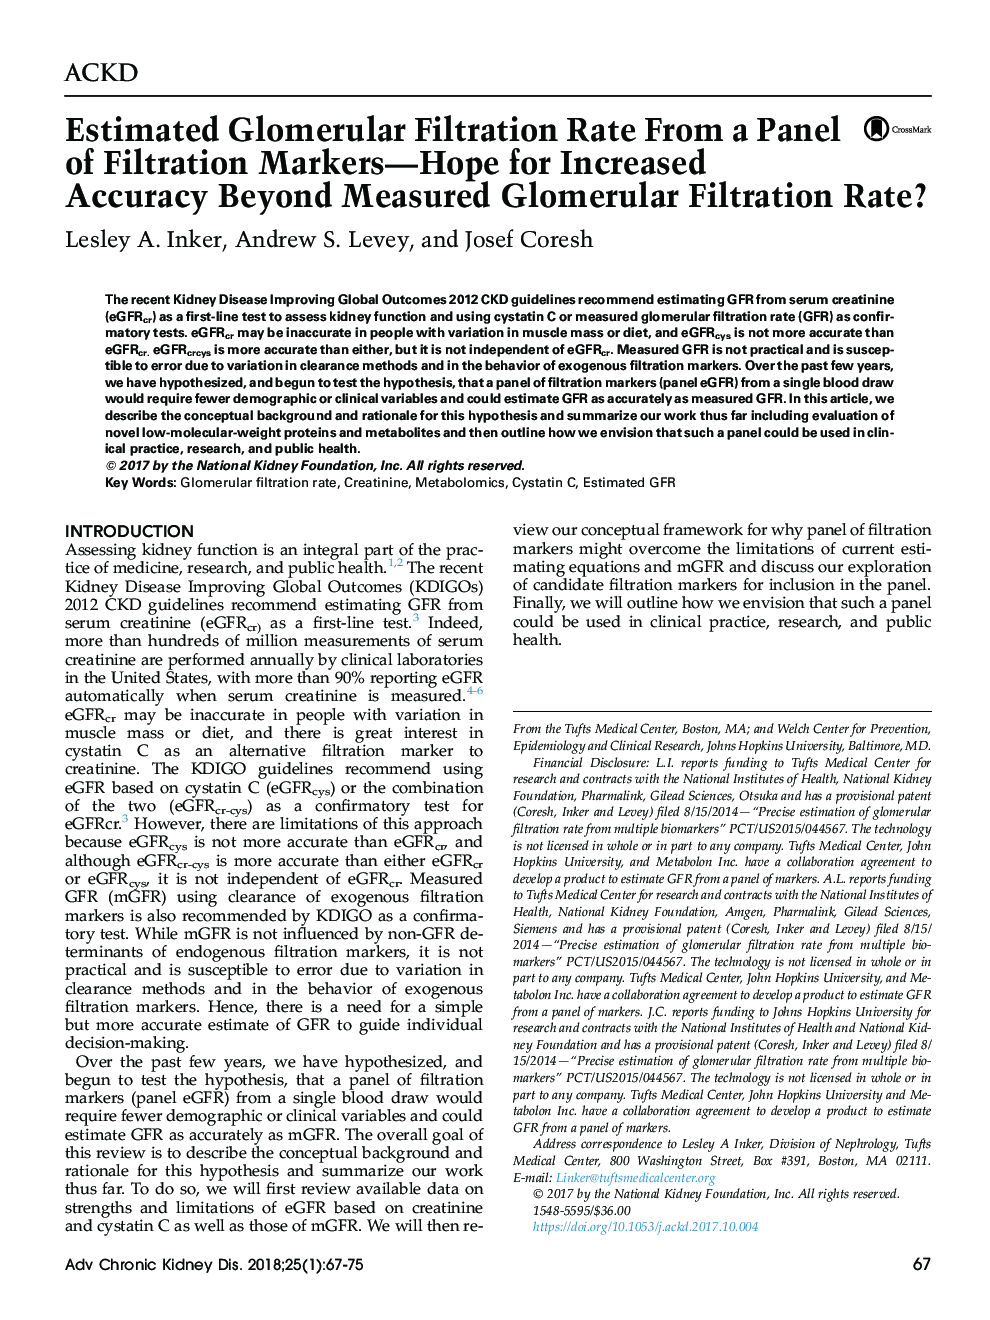 برآورد میزان فیلتراسیون گلومرولی از یک پانل نشانگر تصفیه-امید به منظور افزایش دقت بیش از اندازه گیری میزان فیلتراسیون گلومرولی؟ 